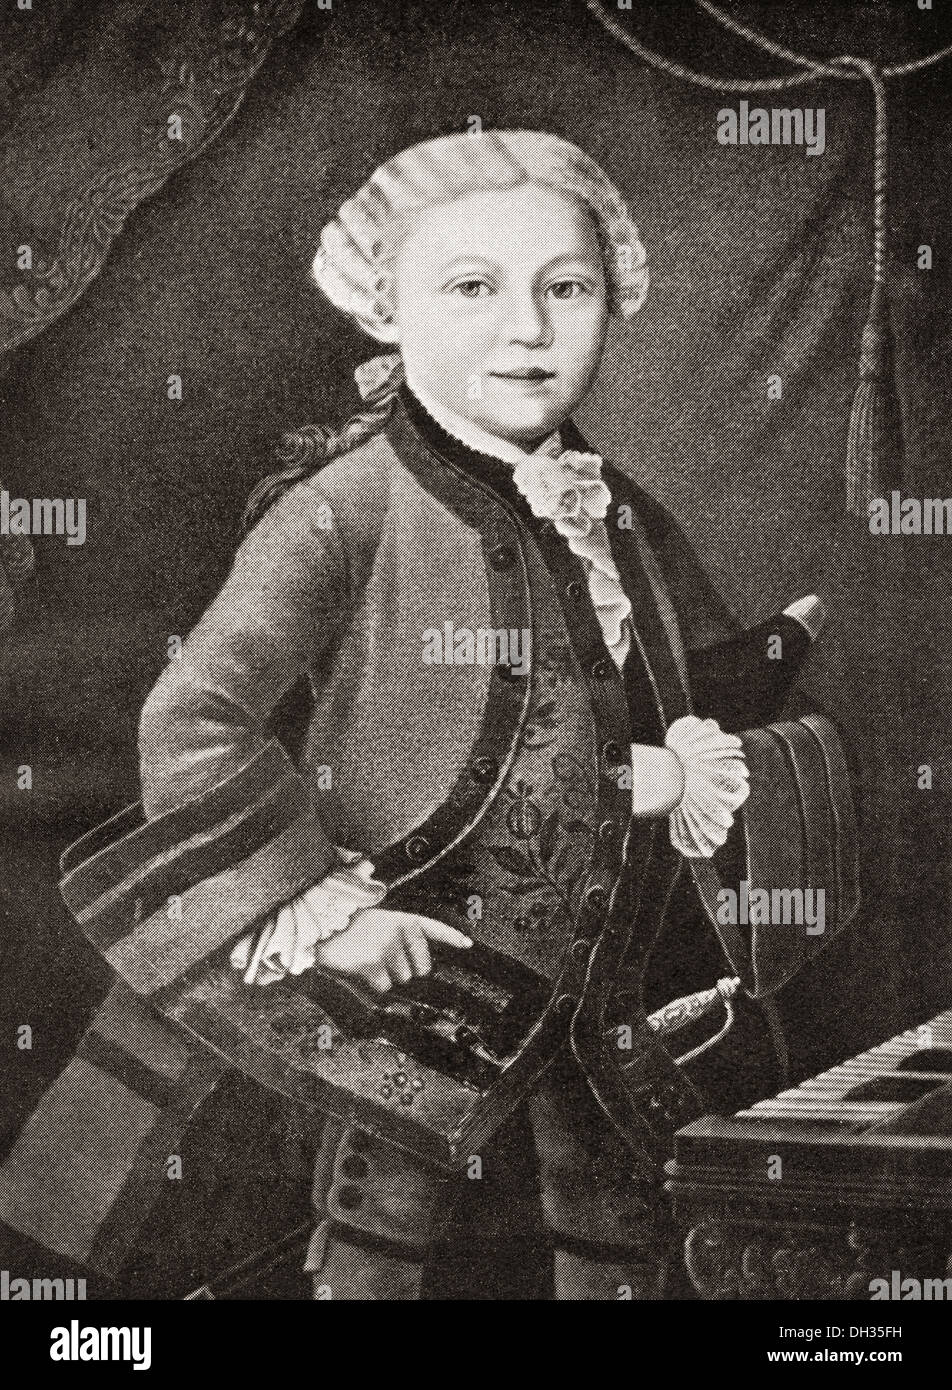 Wolfgang Amadeus Mozart, 1756 - 1791, come un bambino. Il compositore austriaco e musicista. Foto Stock